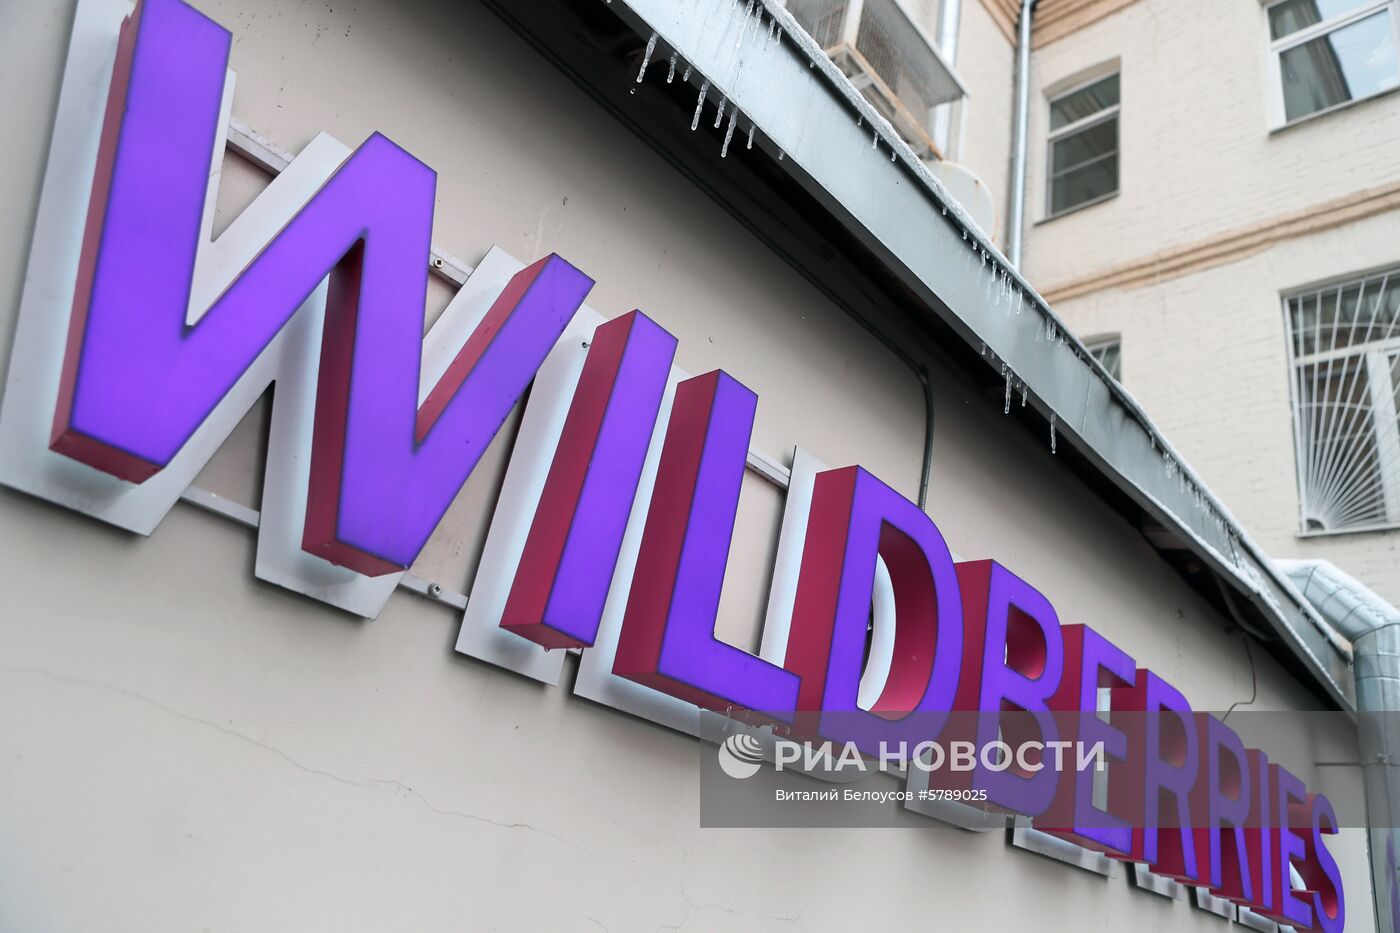 Название интернет-магазина Wildberries рядом с пунктом выдачи заказов в Москве